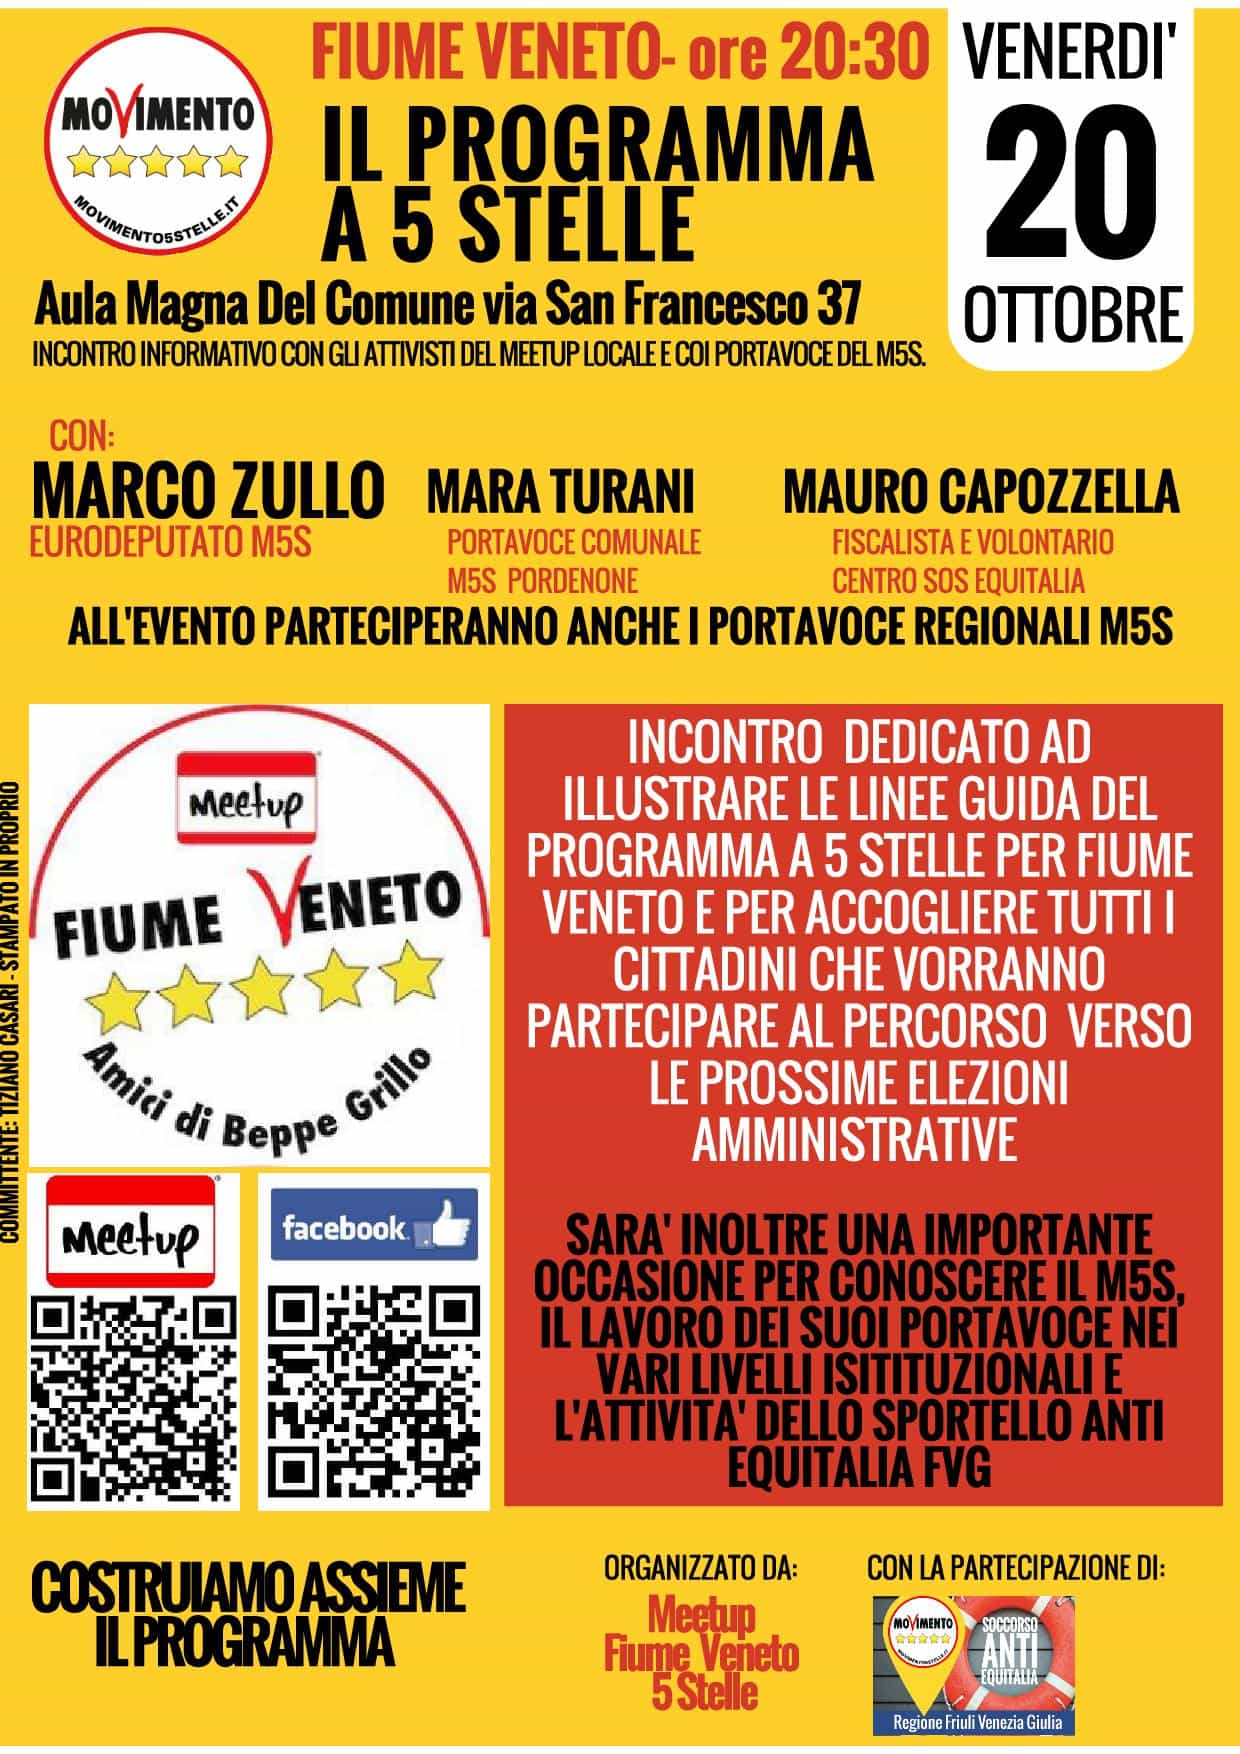 Fiume Veneto (PN) - Il Programma a 5 Stelle @ Aula Magna del Comune | Fiume Veneto | Friuli-Venezia Giulia | Italia